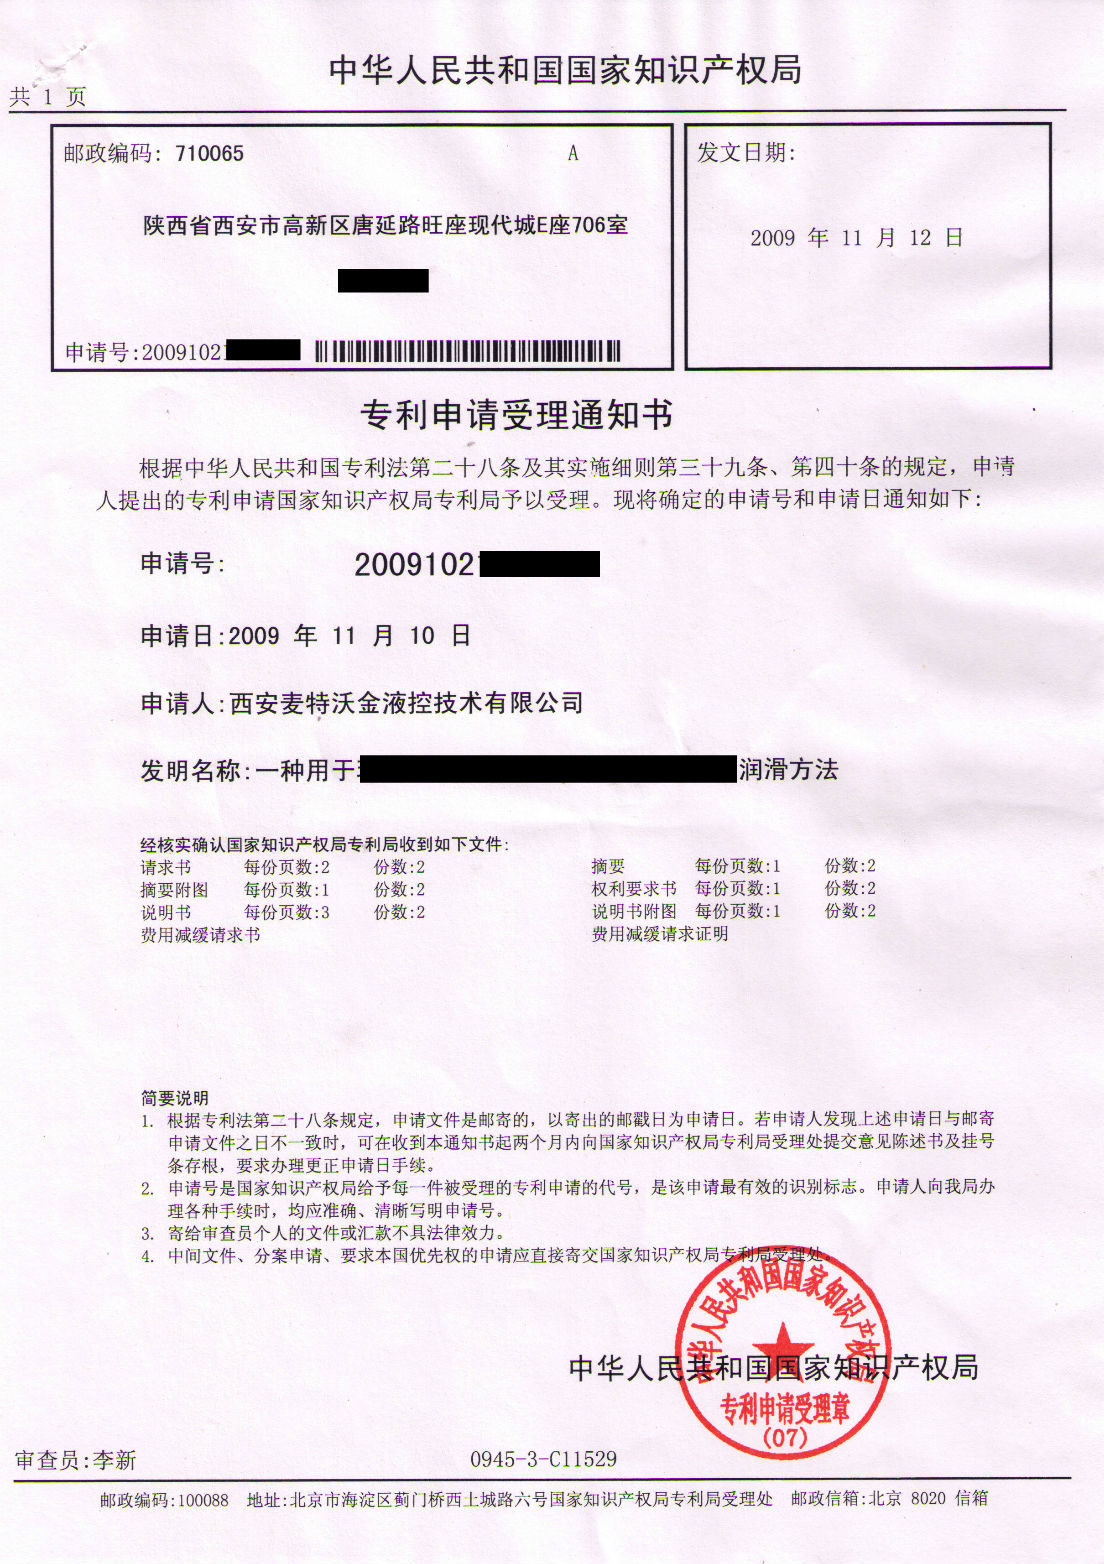 patent certificate of Metalwk